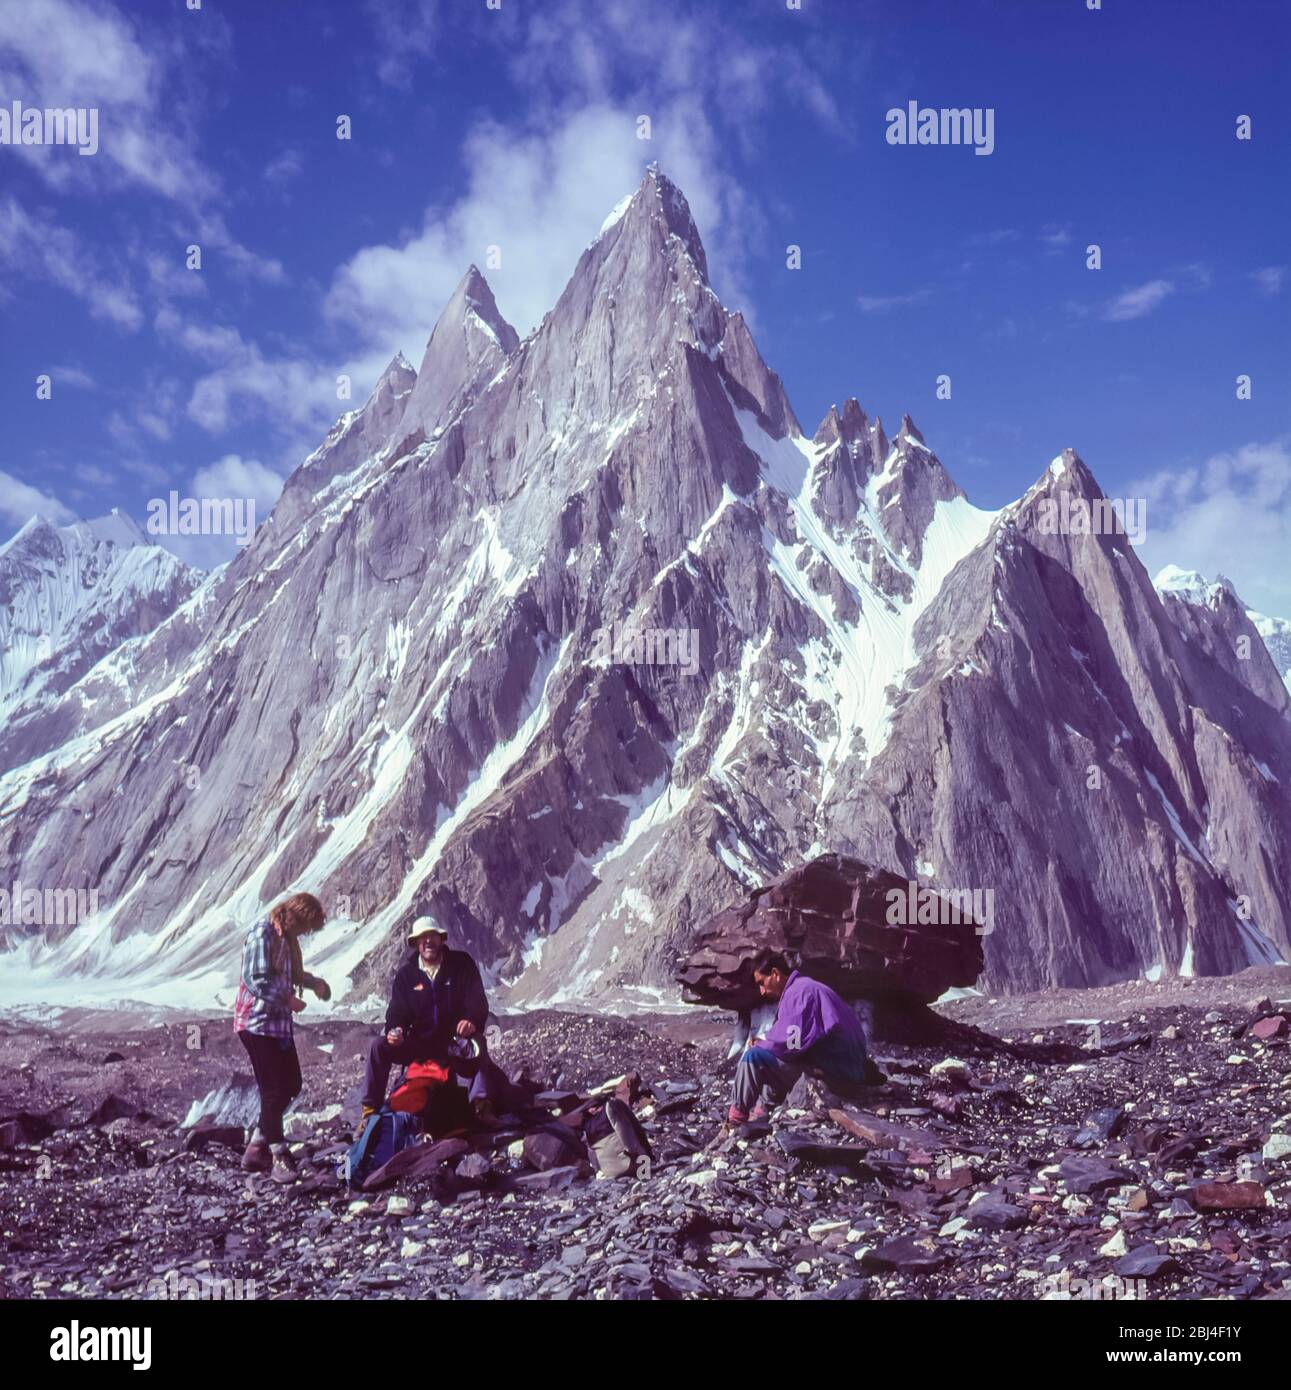 Pakistan, nördliche Gebiete der Karakorum-Berge. Wanderer bewundern den Blick auf den Gipfel des Mitre am Kopf des Baltoro-Gletschers von Concordia, der Bergsteigern als Thronsaal der Berggötter bekannt ist Stockfoto